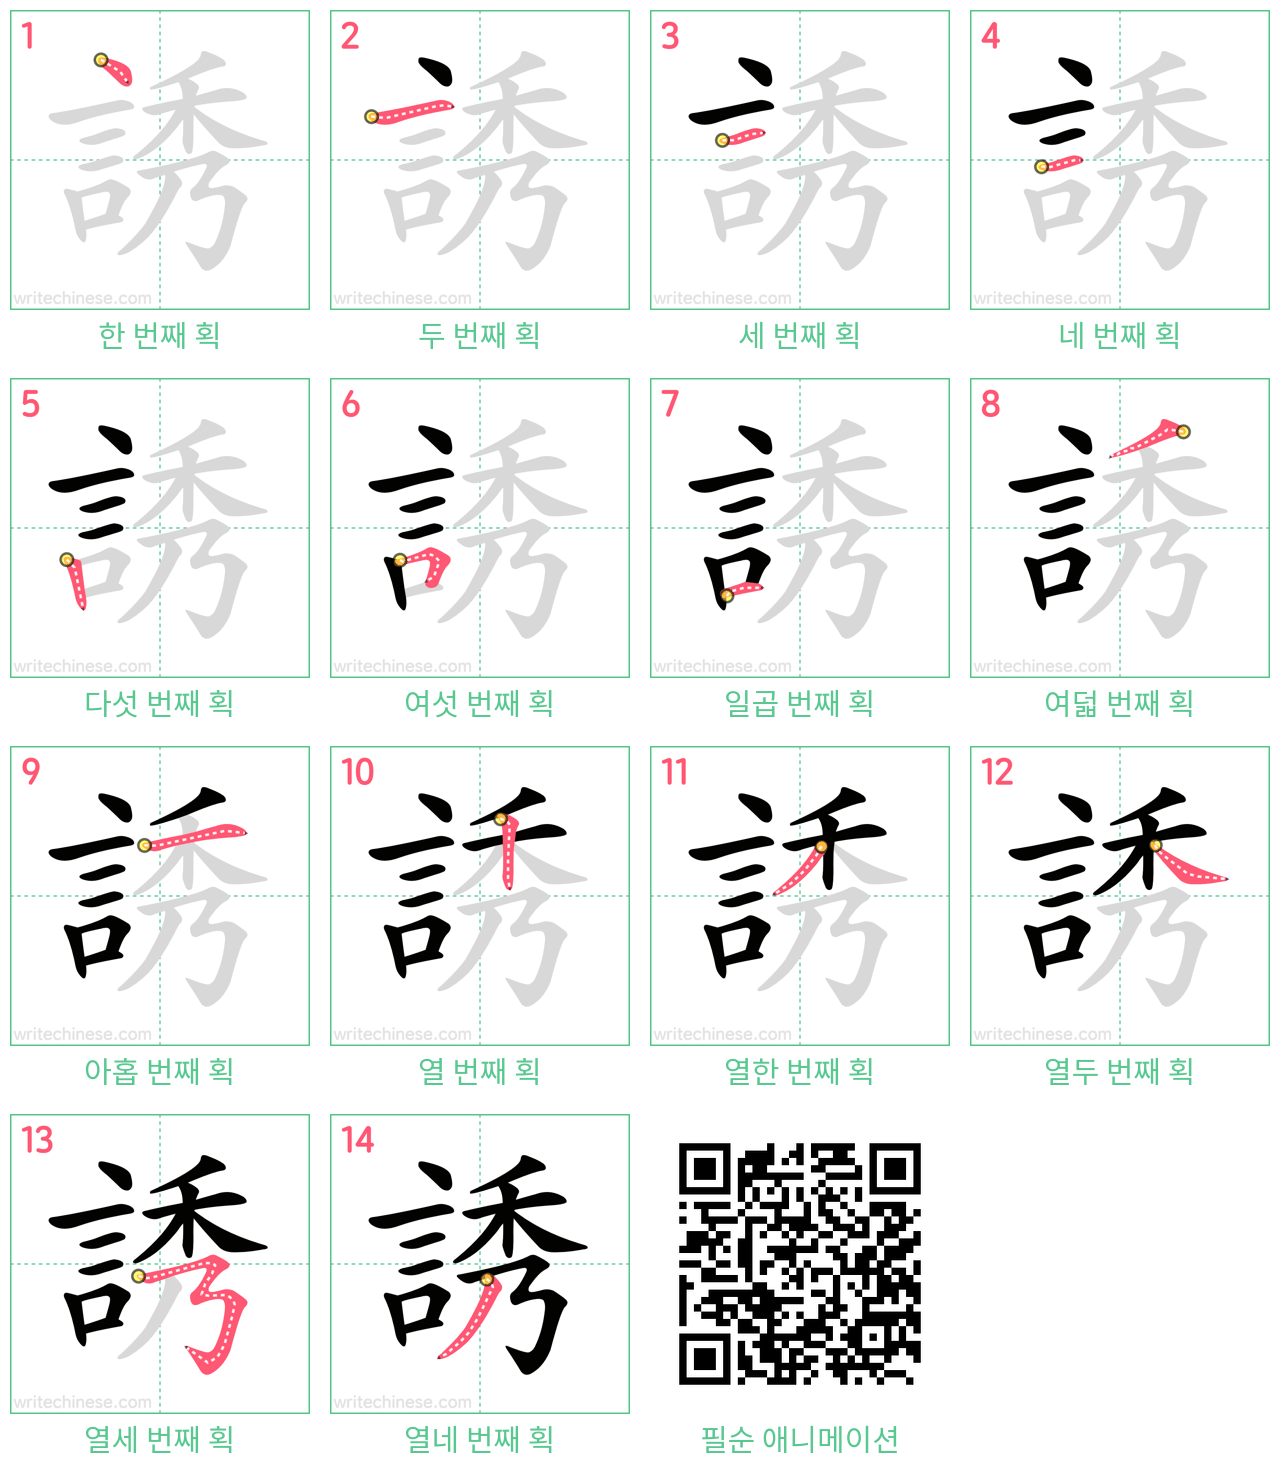 誘 step-by-step stroke order diagrams